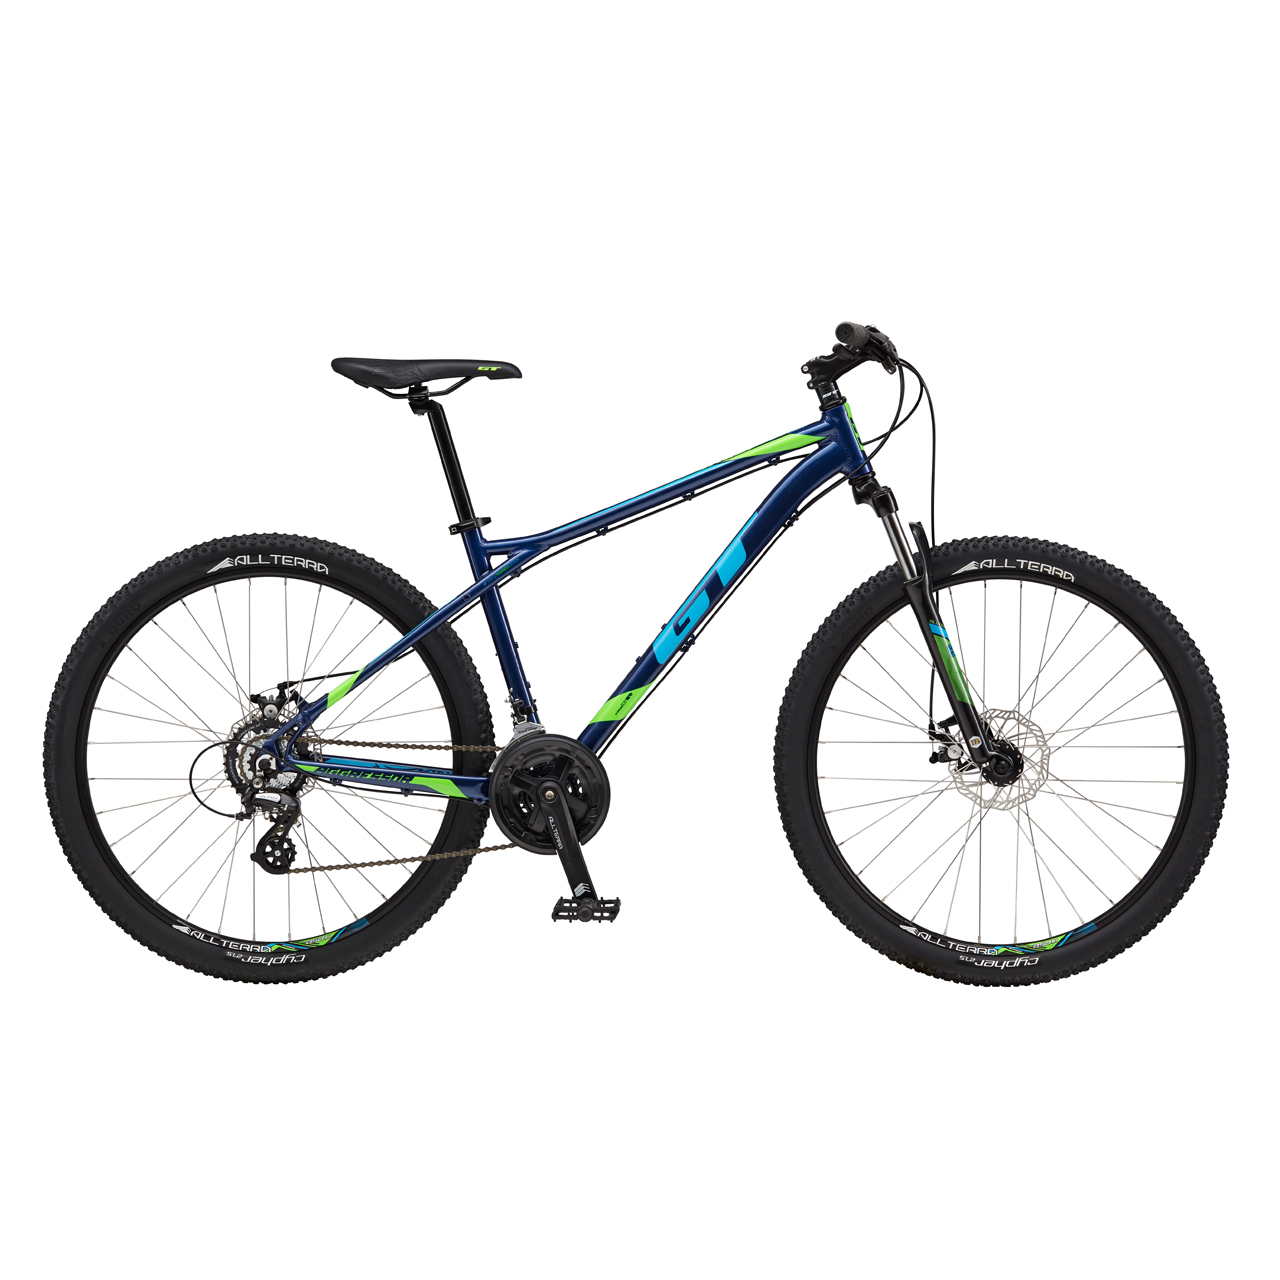 دوچرخه کوهستان جی تی Aggressor Comp سایز 27.5 رنگ آبی تیره2017